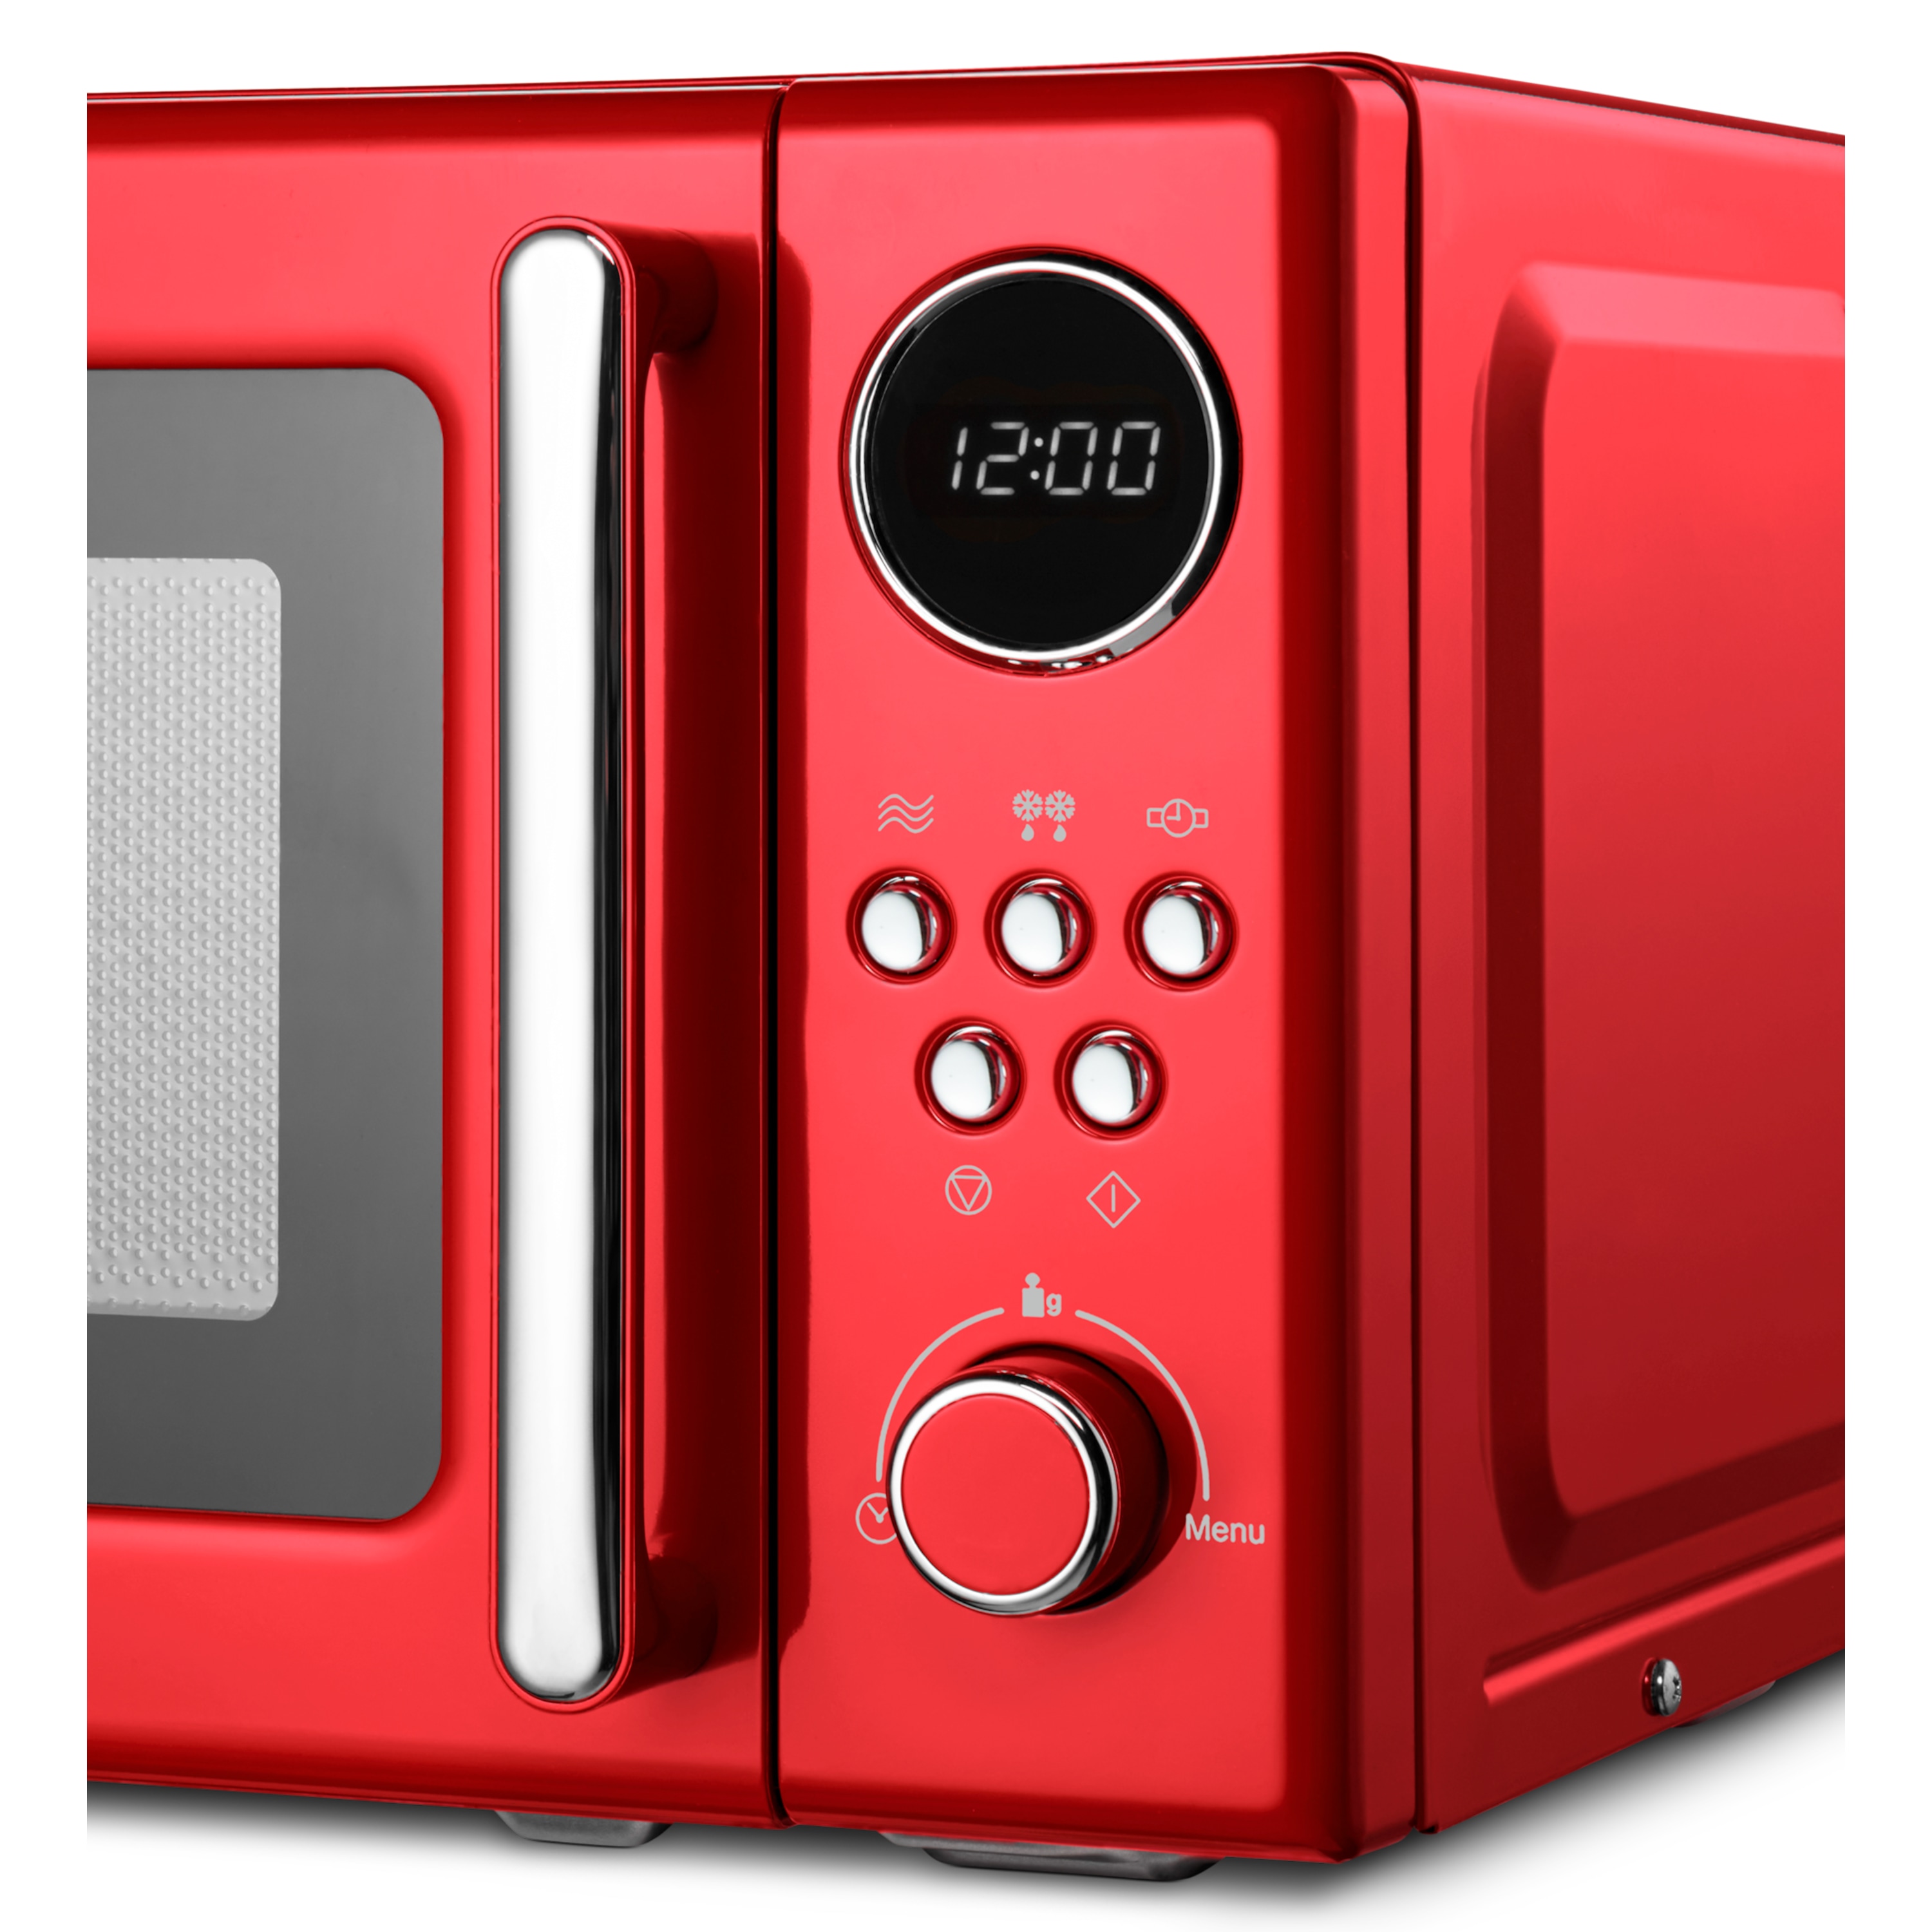 MEDION® Retro-Mikrowelle MD 15000, rot, 800 W Leistung, 20 L kompakt, 5 Mikrowellenstufen, Auftaufunktion, Timerfunktion, stilvolles Retro-Design